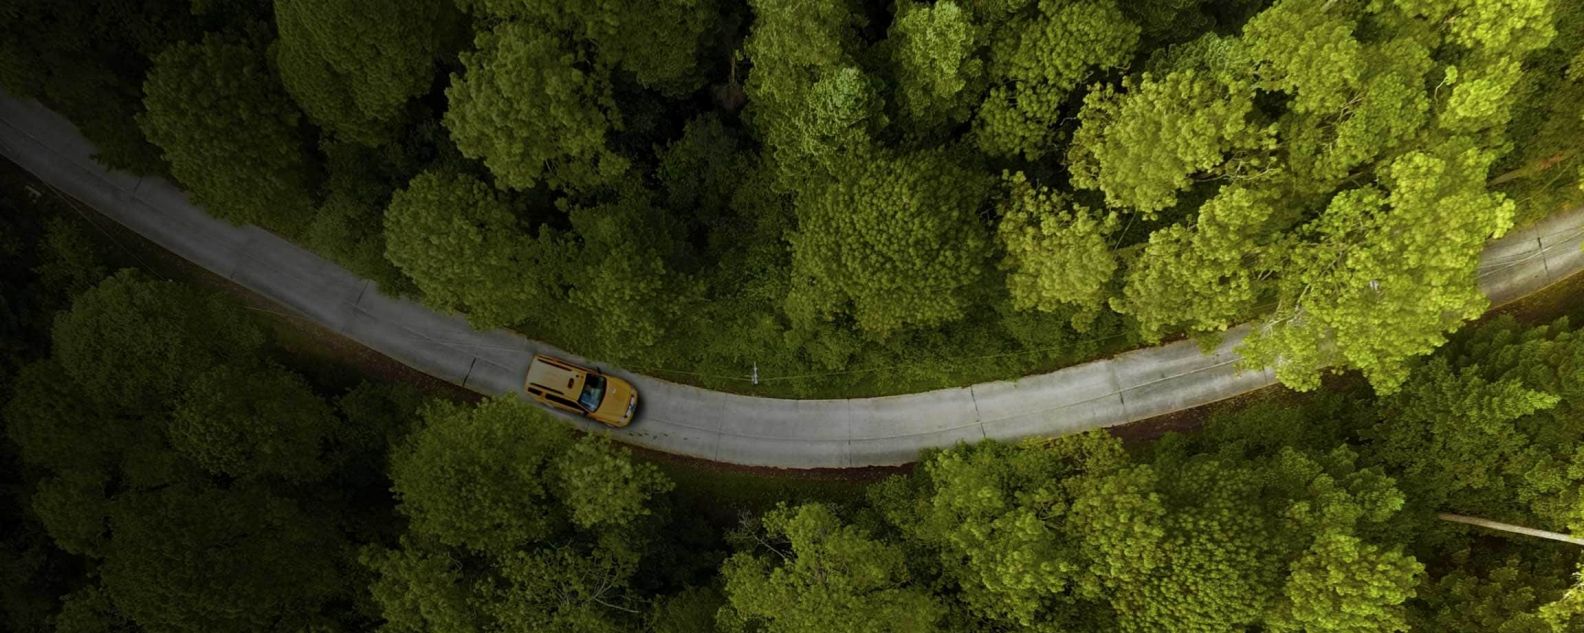 汽车在两侧树木丛生的道路上行驶的鸟瞰图